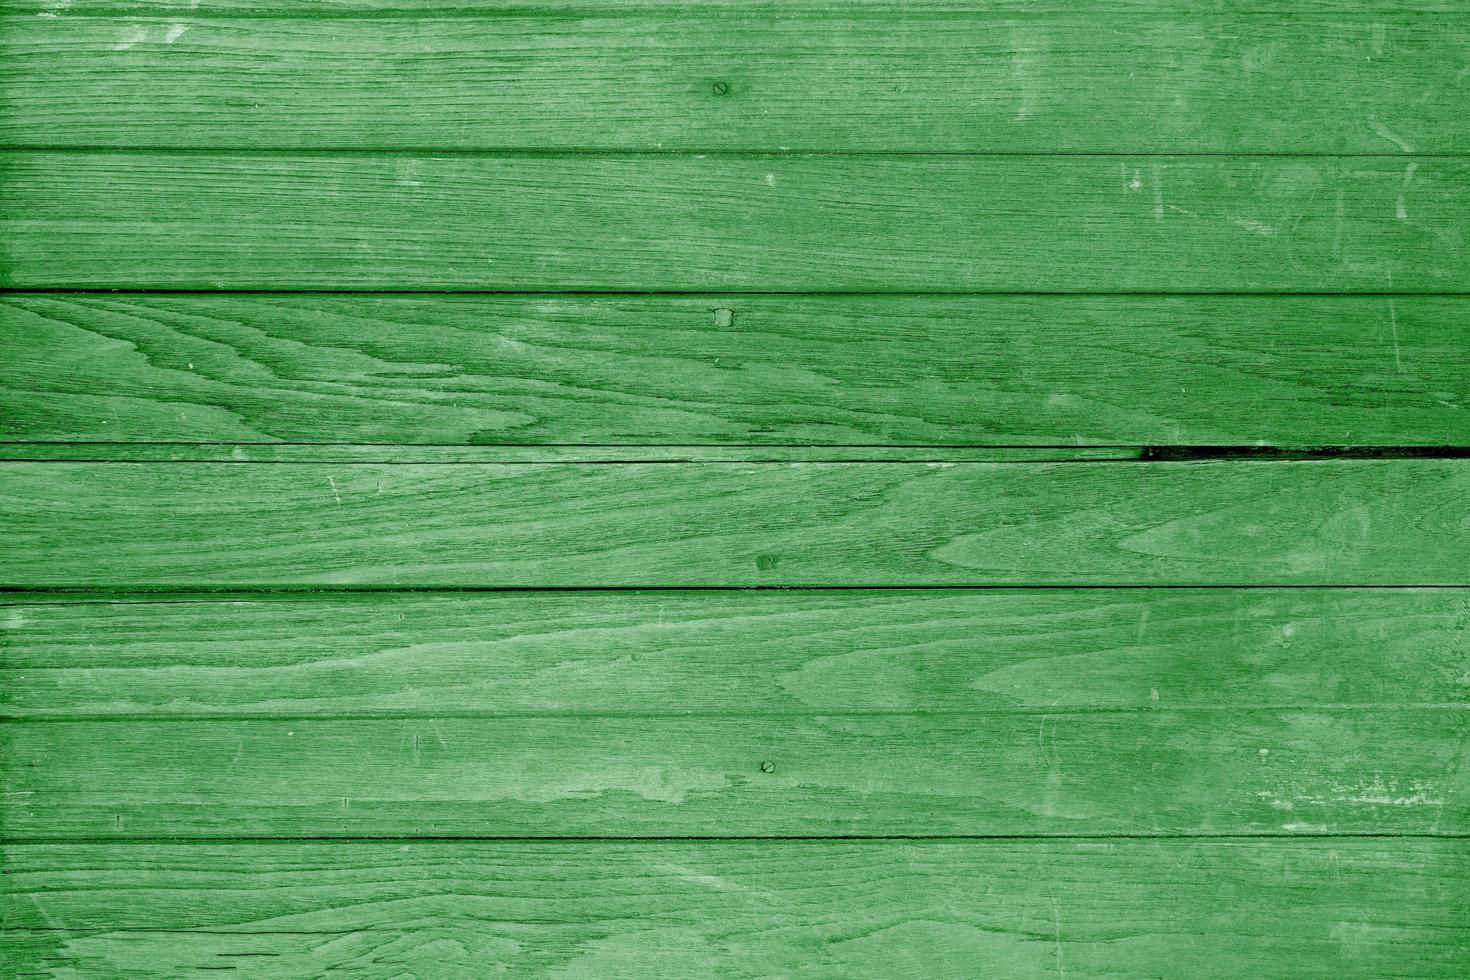 struttura della plancia di legno verde, sfondo astratto, idee grafiche per il web design o banner foto